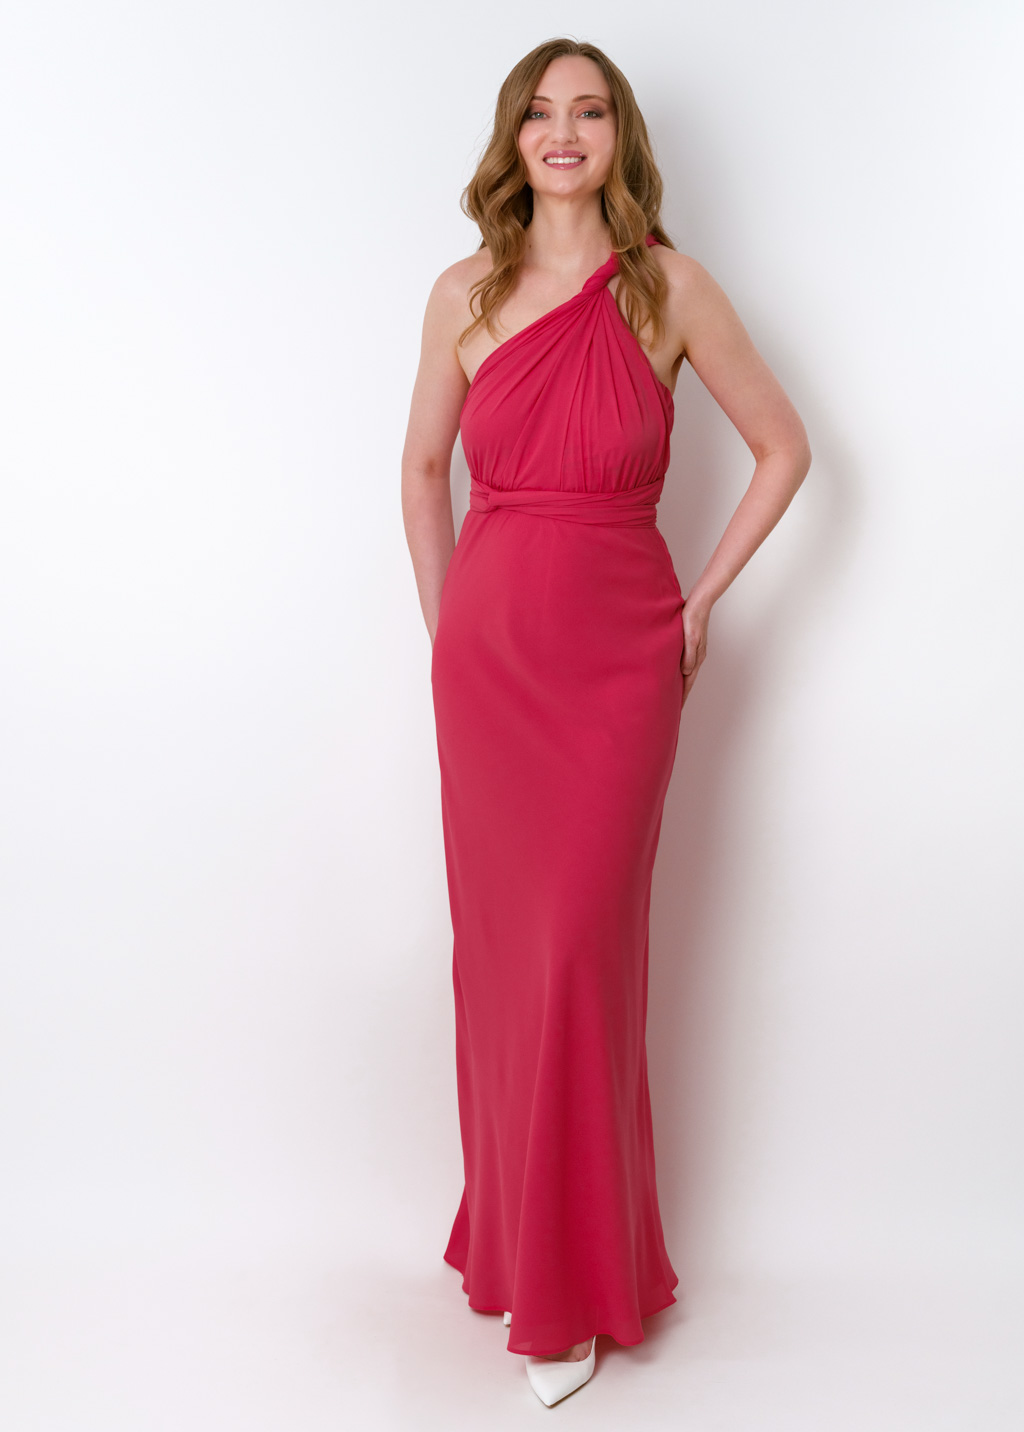 Coral pink chiffon infinity long dress